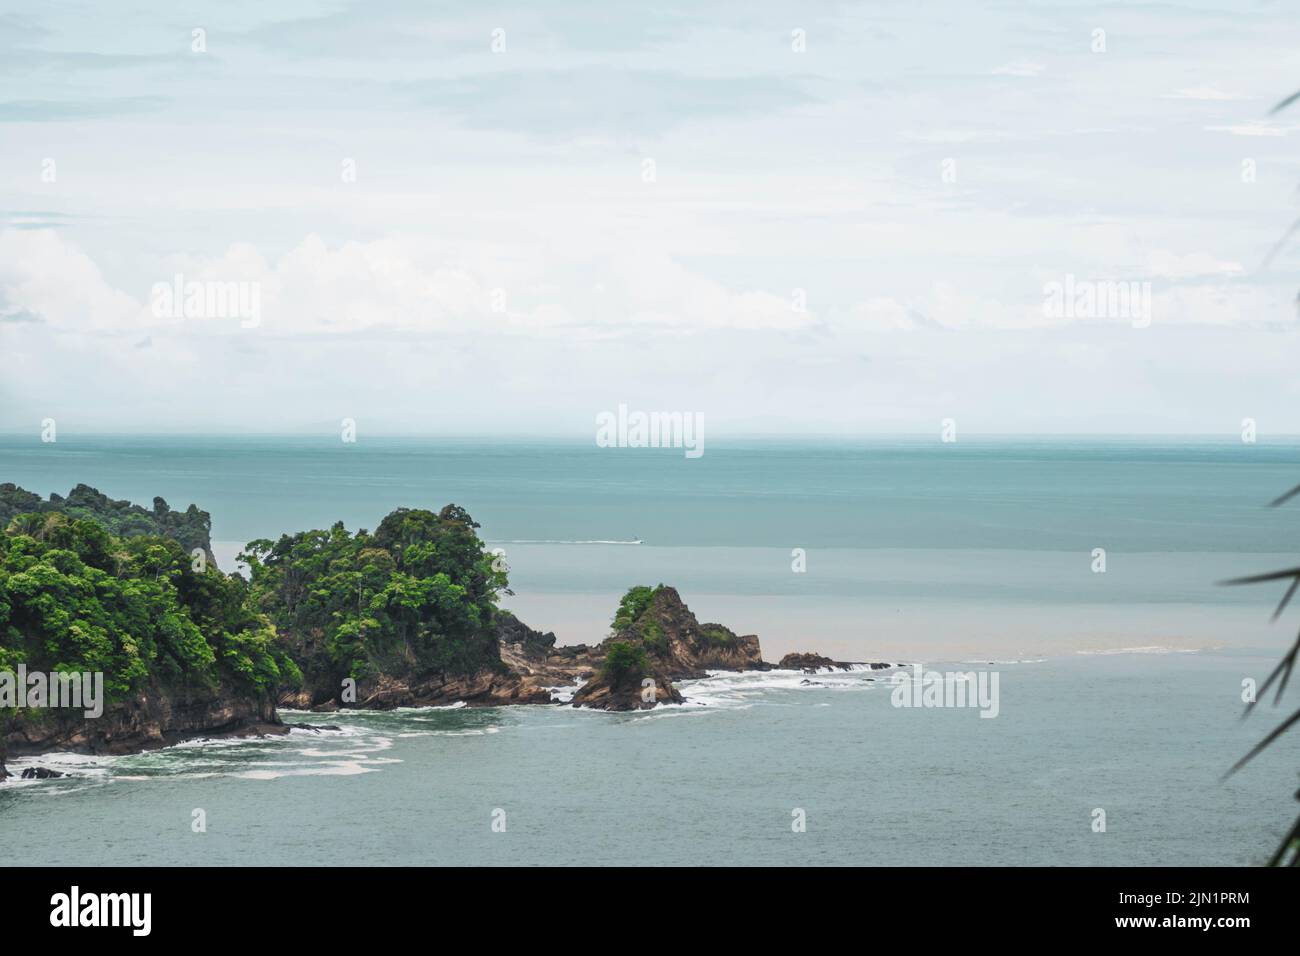 jungle and sea landscape of Costa Rica Stock Photo